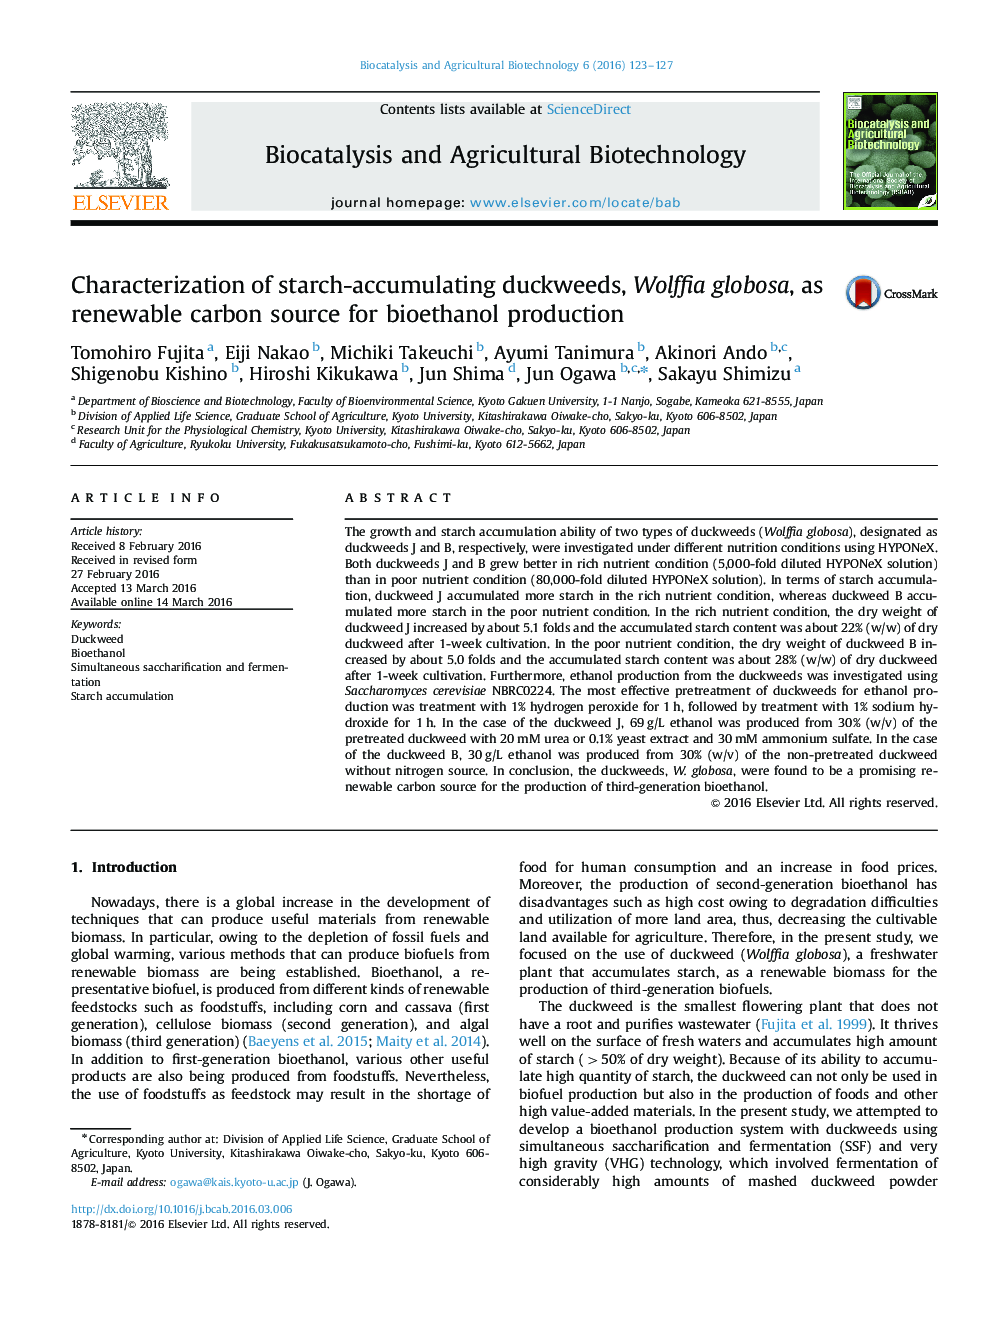 خصوصیات عدسک آبی جمع آوری کننده نشاسته، Wolffia globosa، به عنوان منبع کربن تجدیدپذیر برای تولید بیواتانول